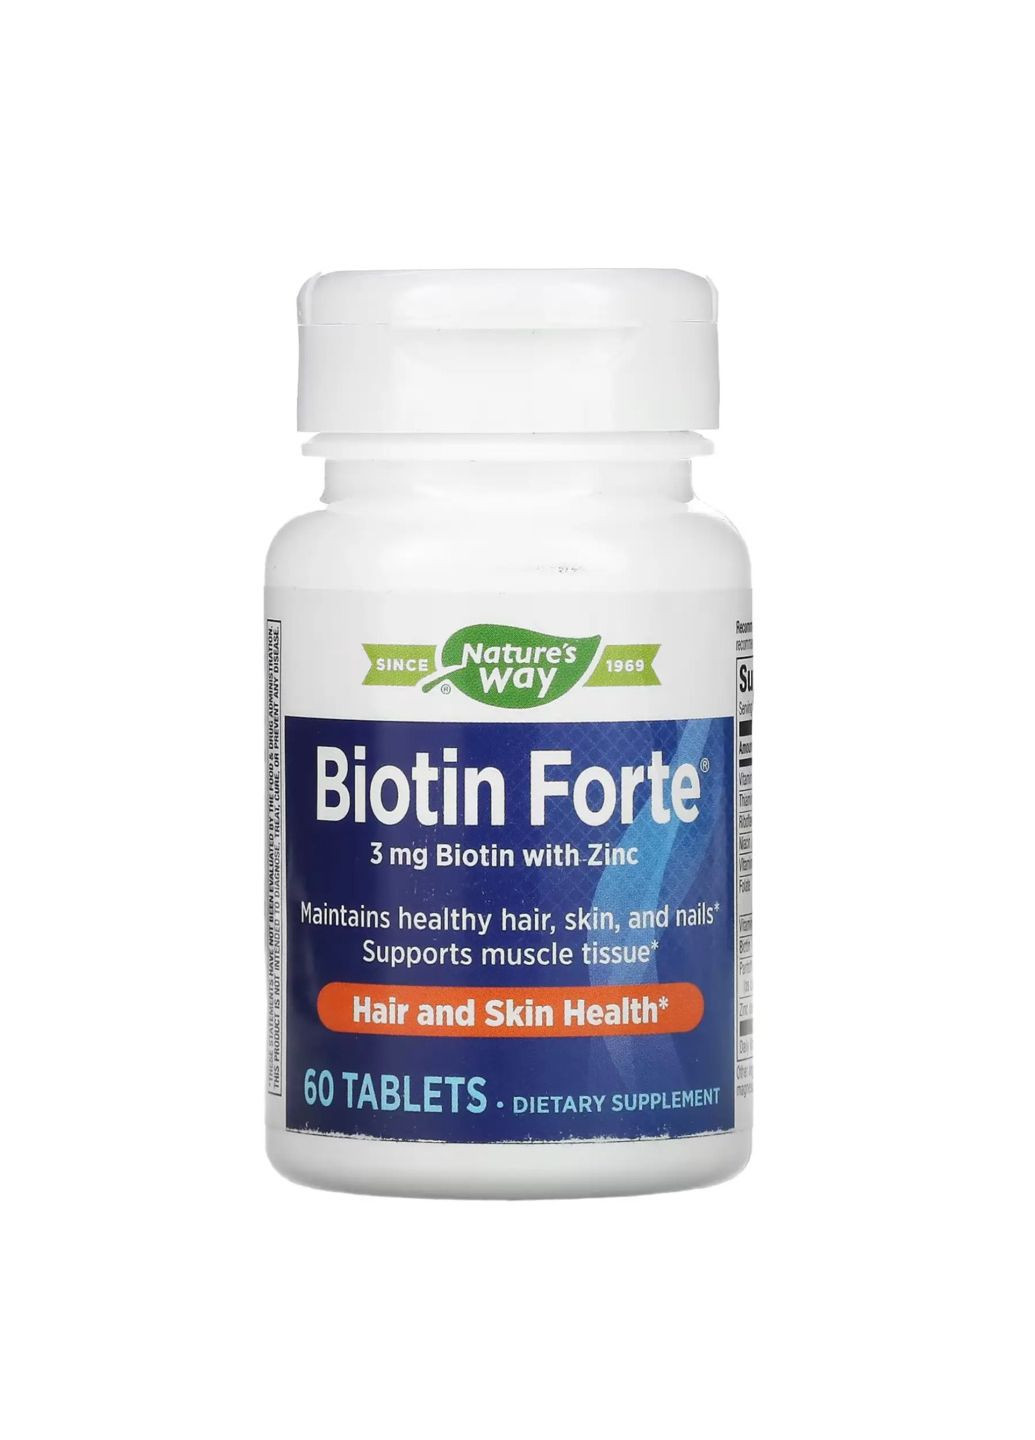 Biotin Forte 3 mg - 60 tabs добавка для здоровья волос, кожи и ногтей Nature's Way (284171983)